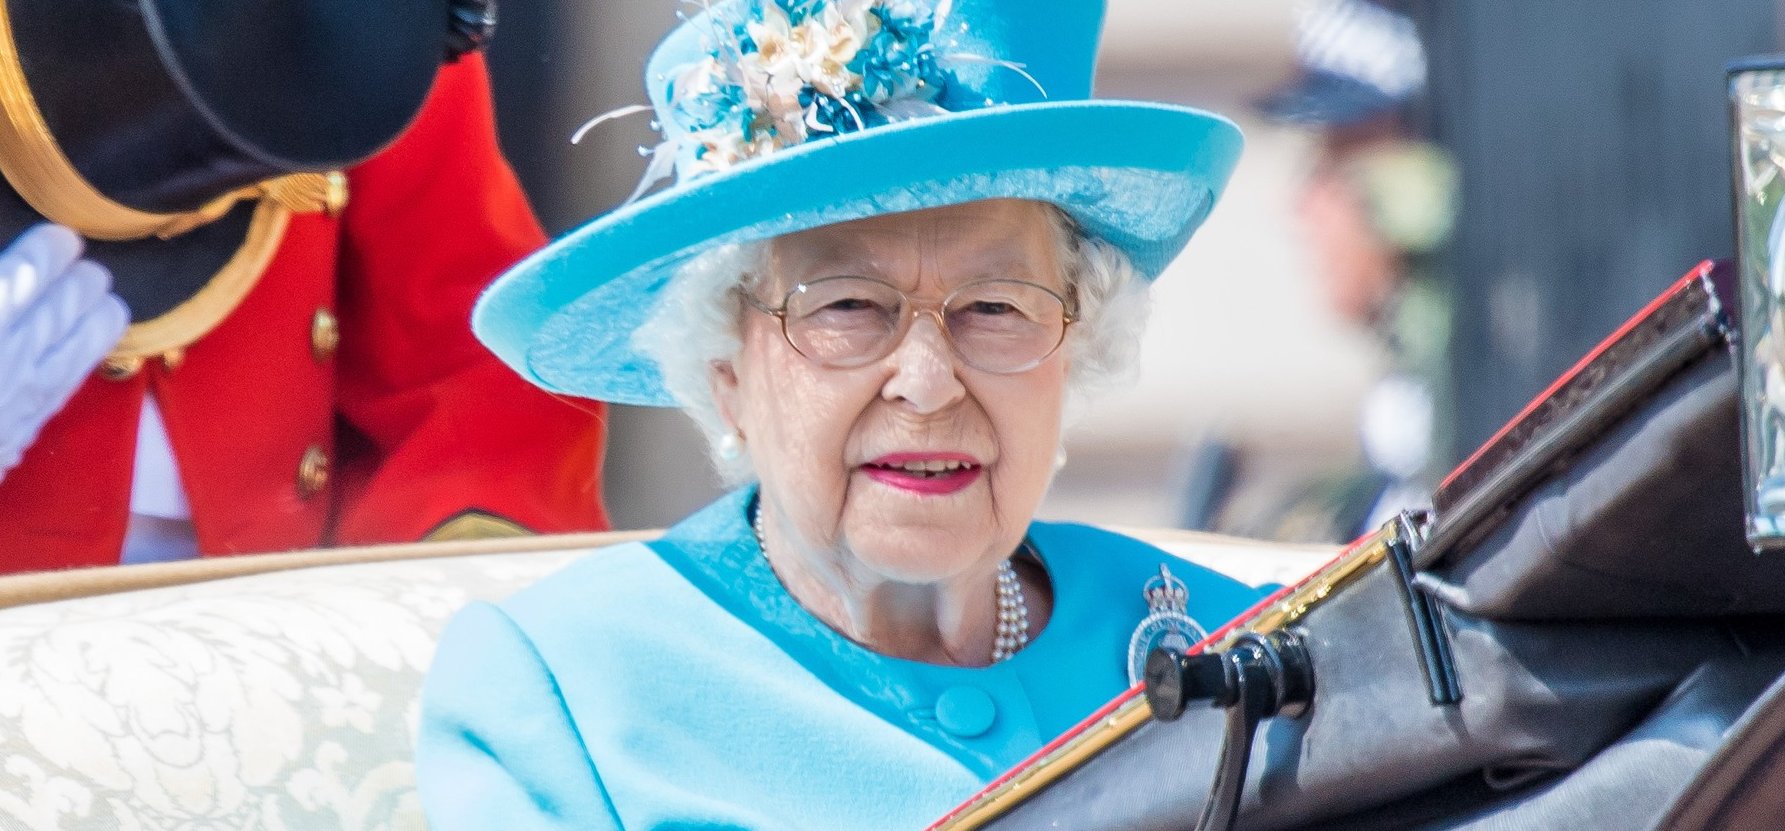 Kakilás közben láthatjuk II. Erzsébet királynőt, botrány lehet belőle